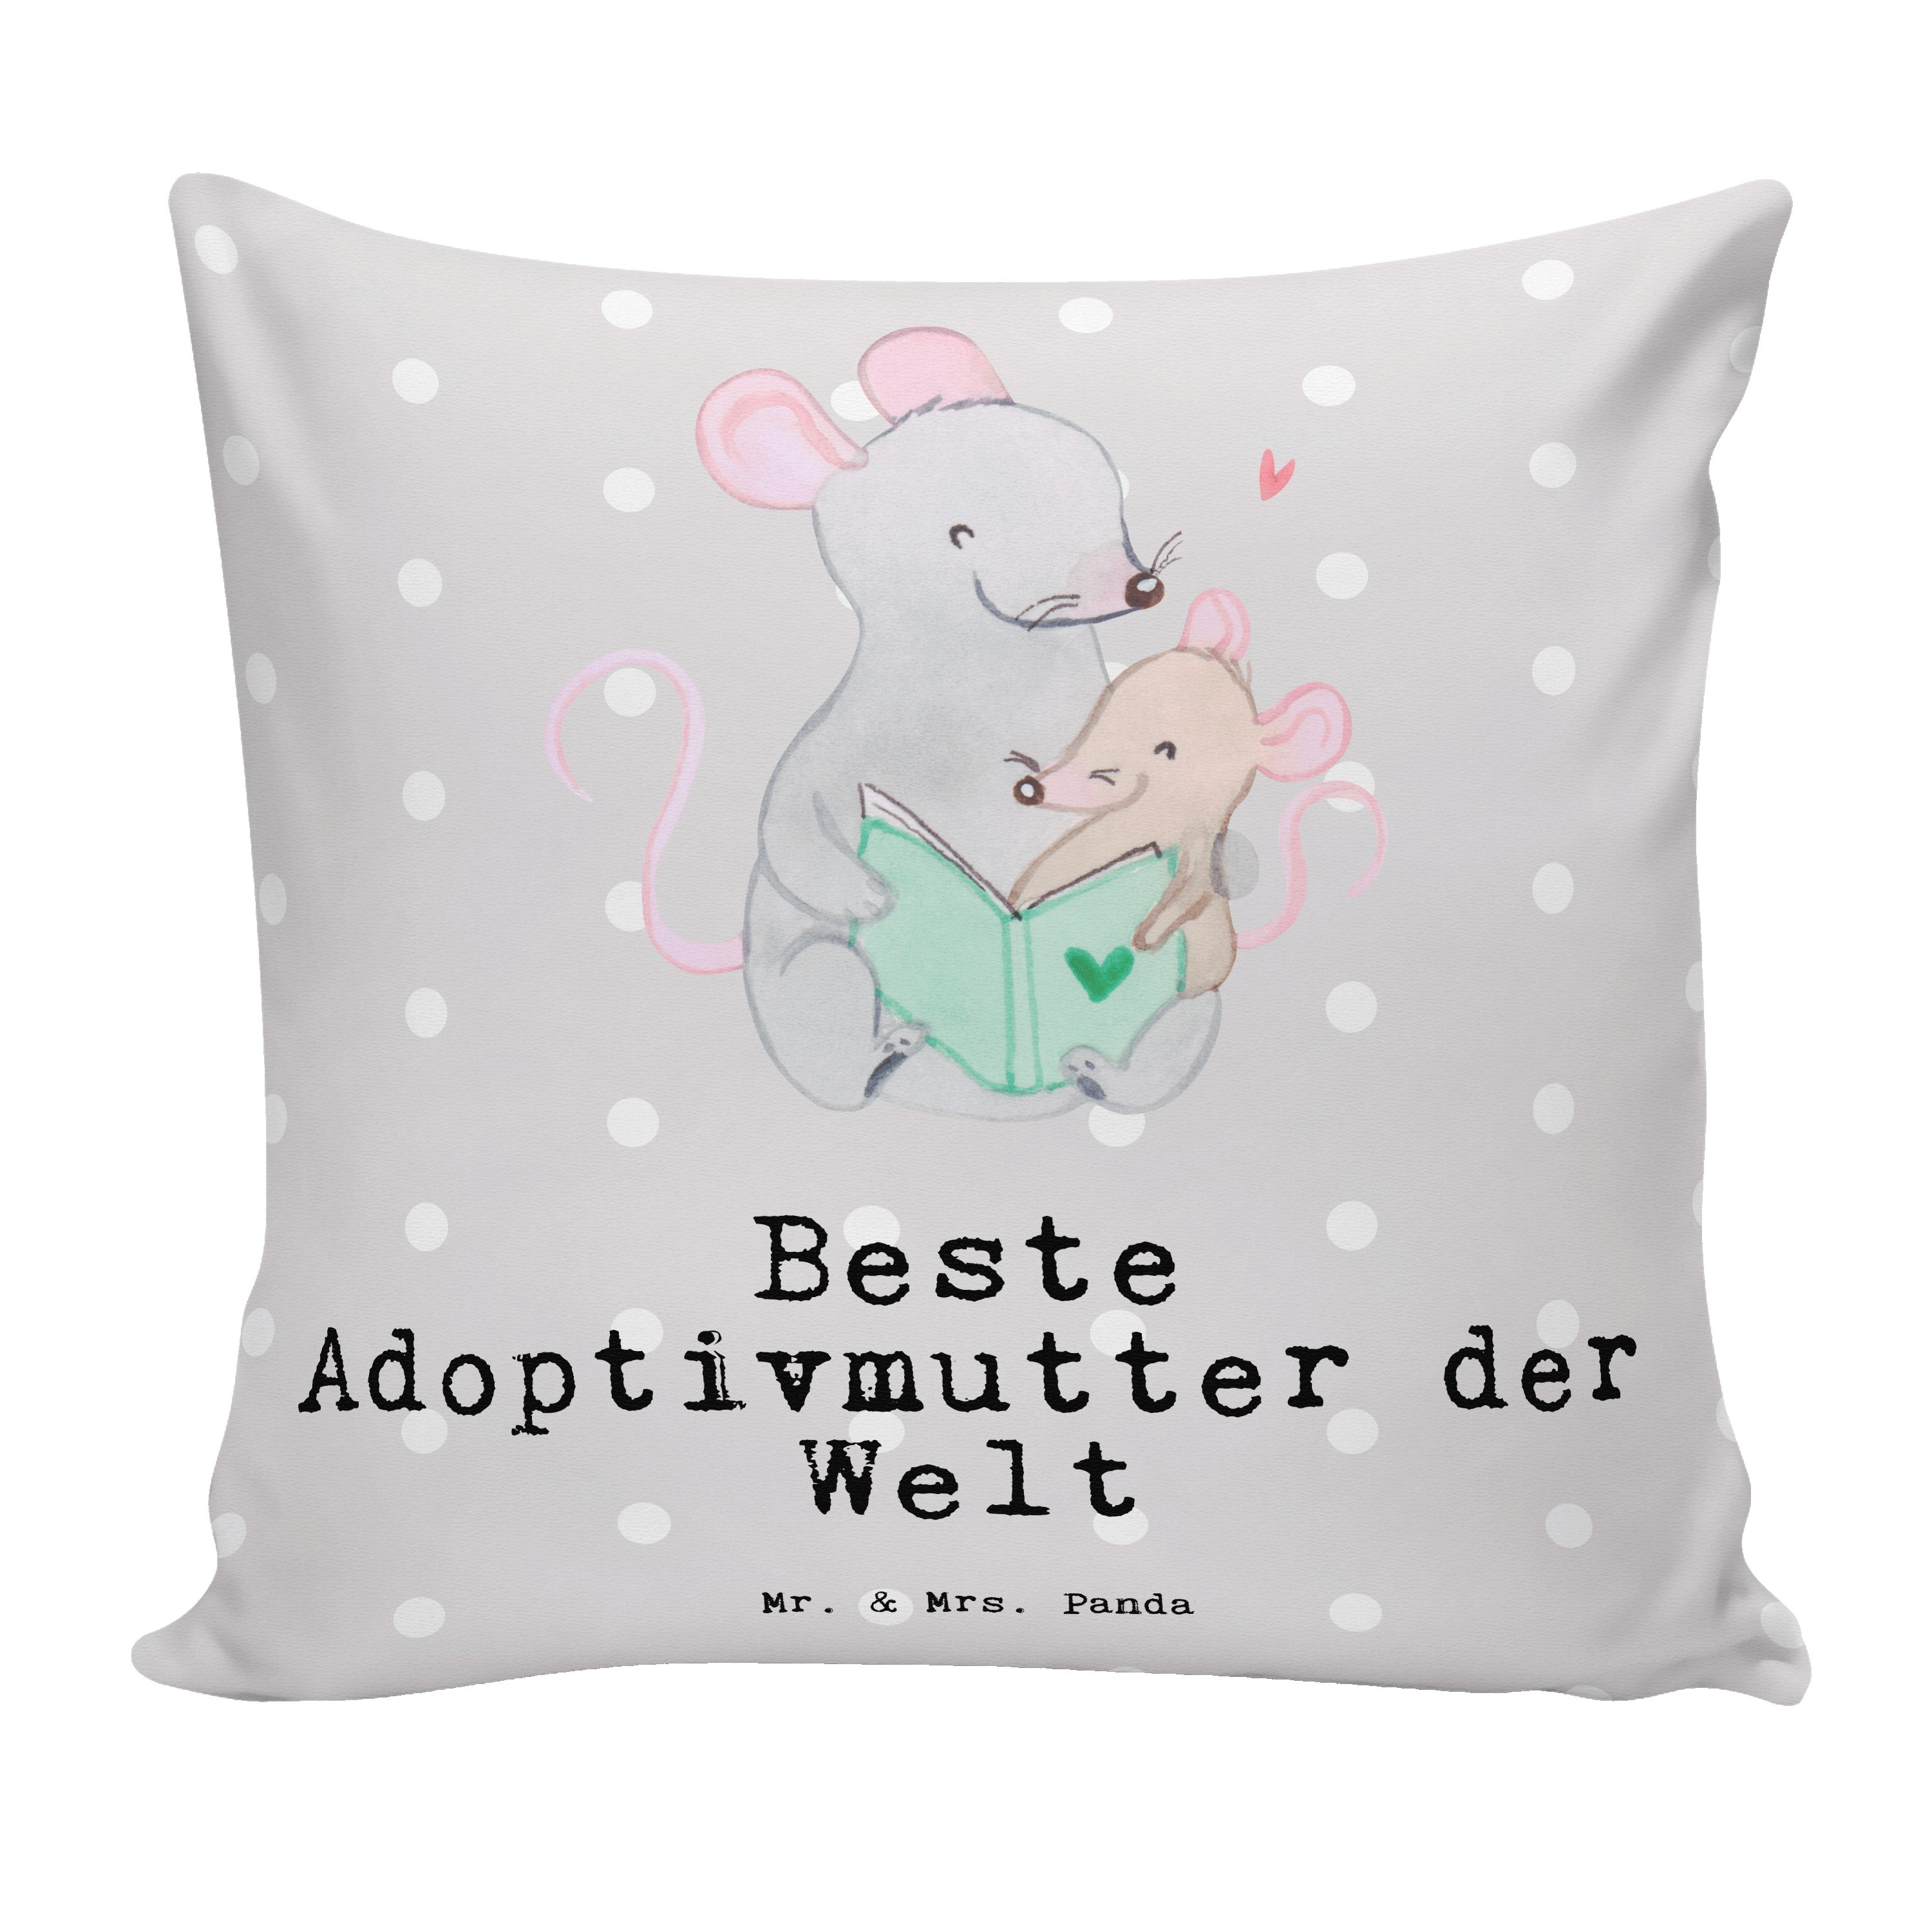 Welt Adoptivmutter Beste S Mr. Geschenk, Panda & Grau - der Maus Pastell Danke, Dekokissen - Mrs.